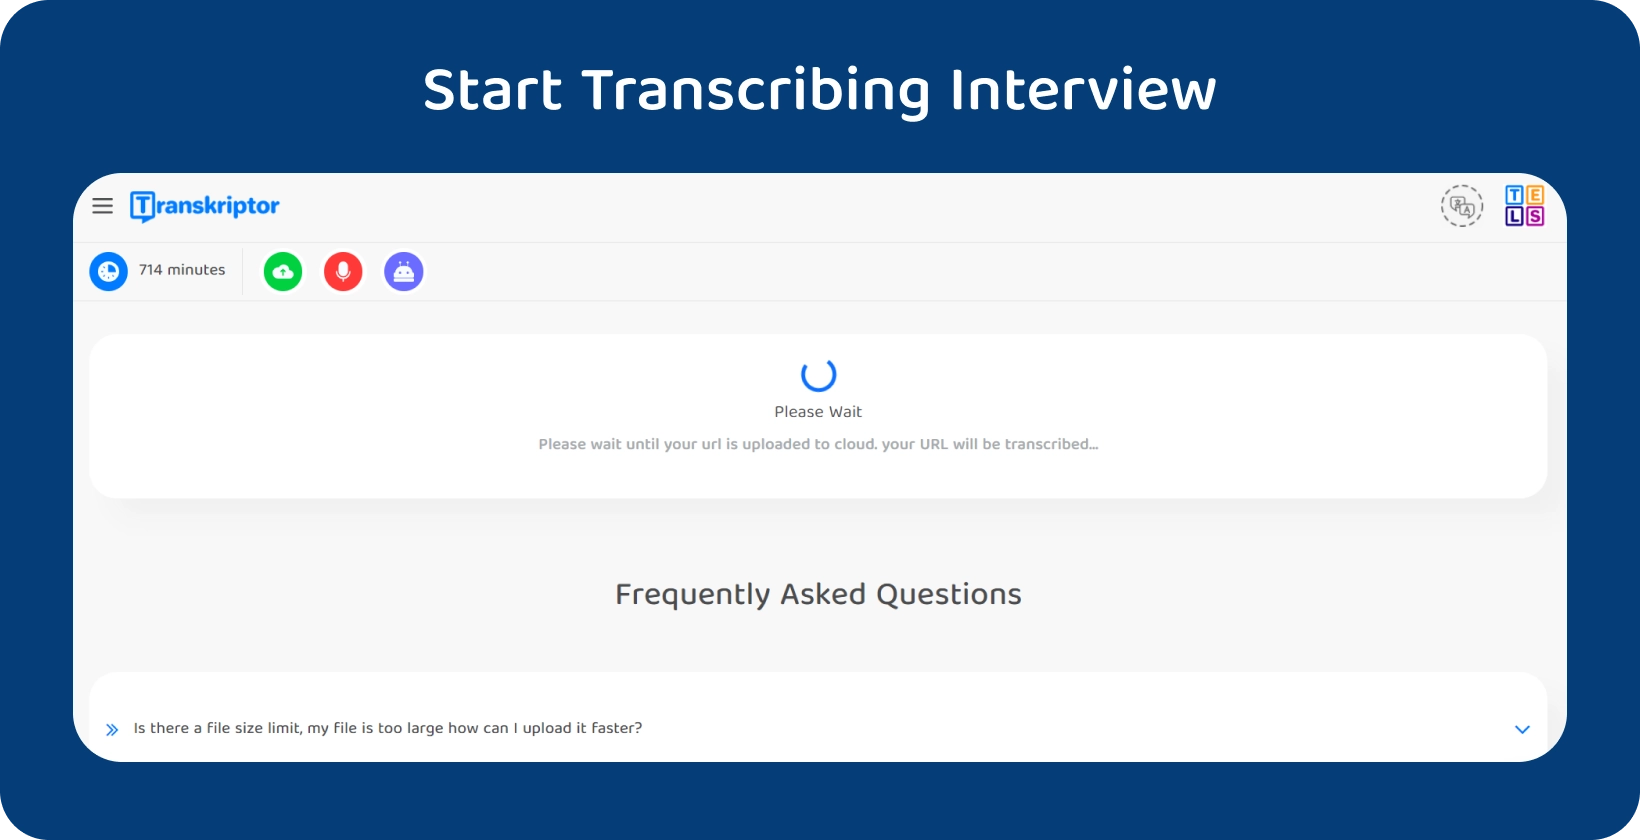 Starten Sie die Transkription der Dissertation mit Transkriptor und zeigen Sie ein 714-minütiges Interview, das auf die Verarbeitung wartet.